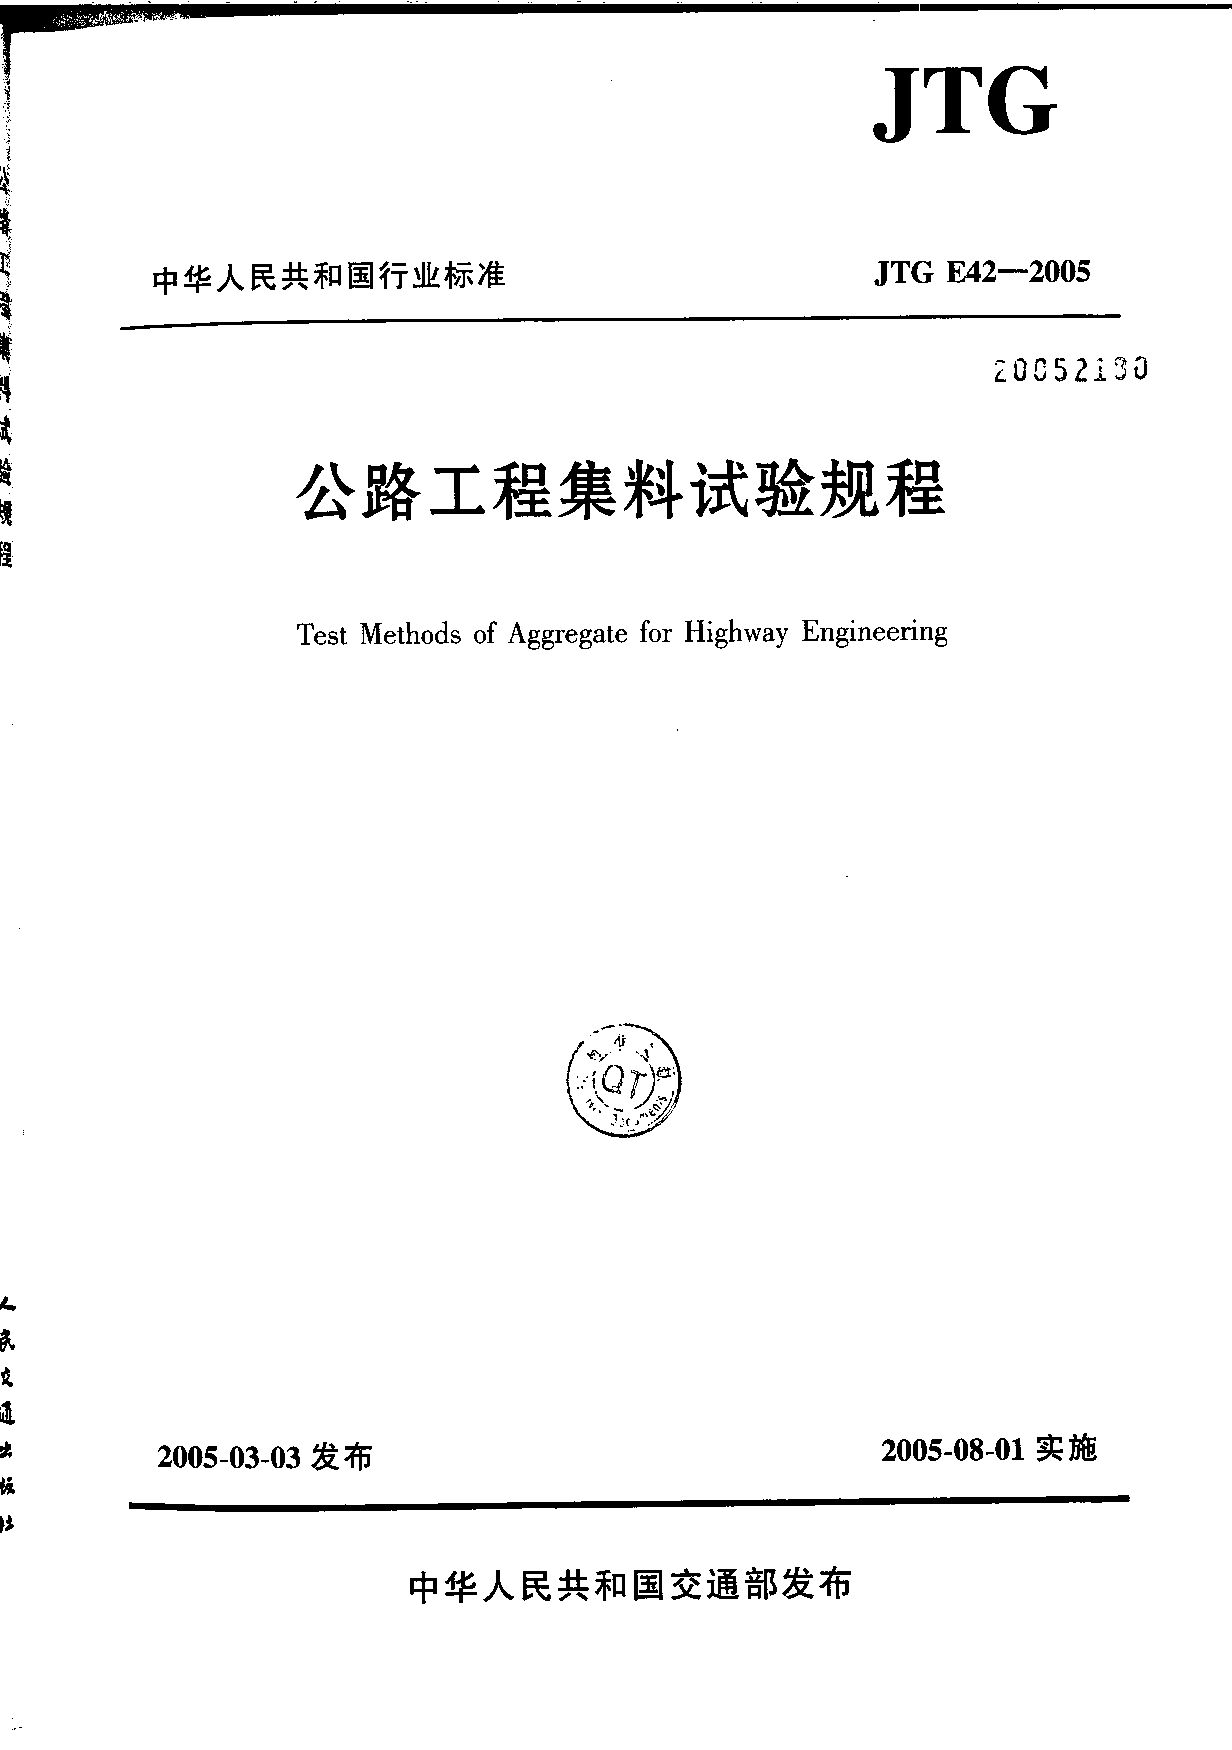 JTG E42-2005封面图